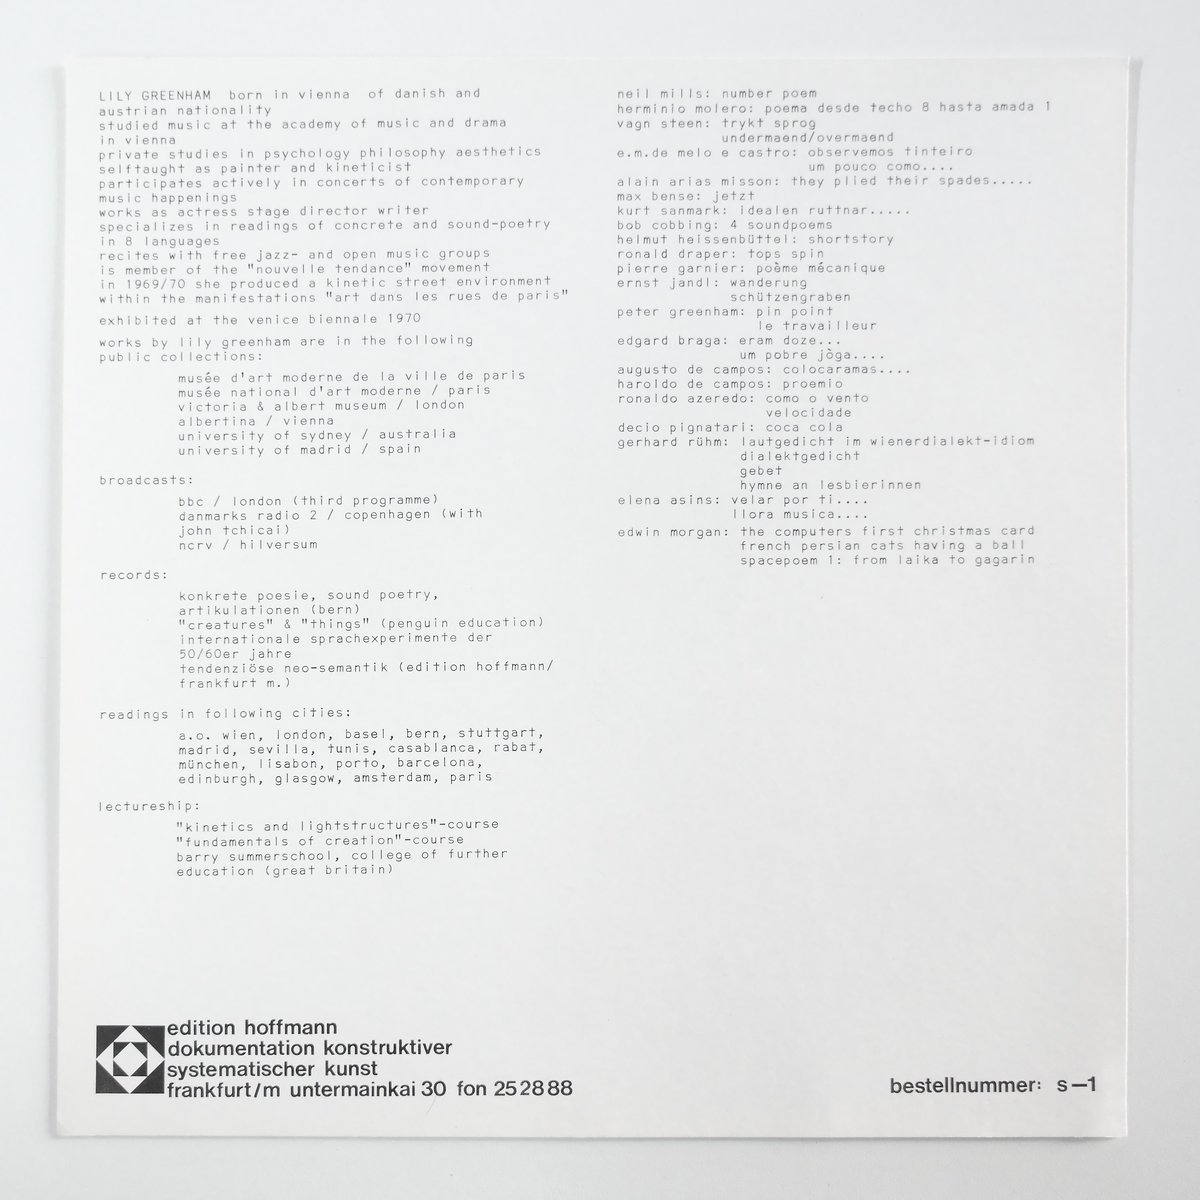 sleve notes, front: &quot;internationale sprachexperimmente der 50/60er jahre&quot; (1970), 31,5 x 31,5 cm